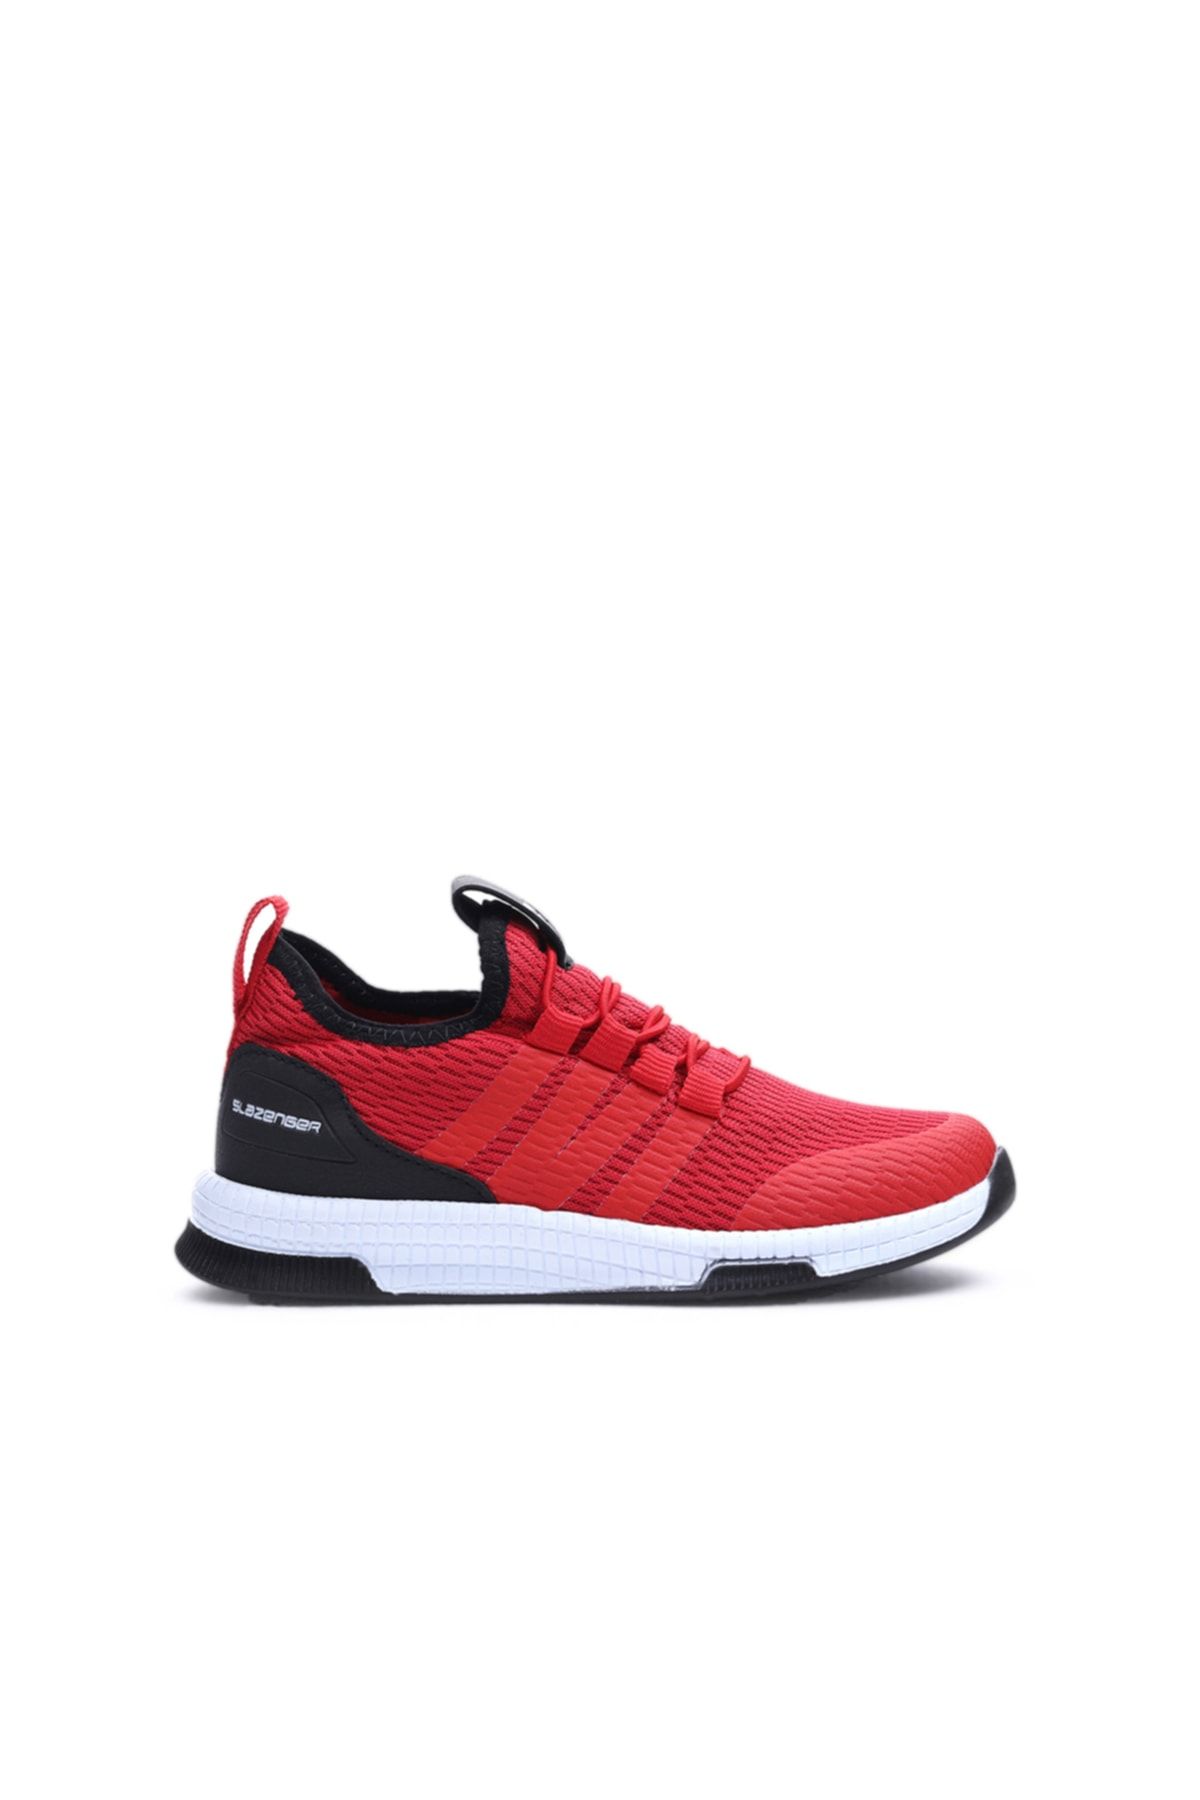 Slazenger Ebba Sneaker Erkek Çocuk Ayakkabı Kırmızı / Siyah